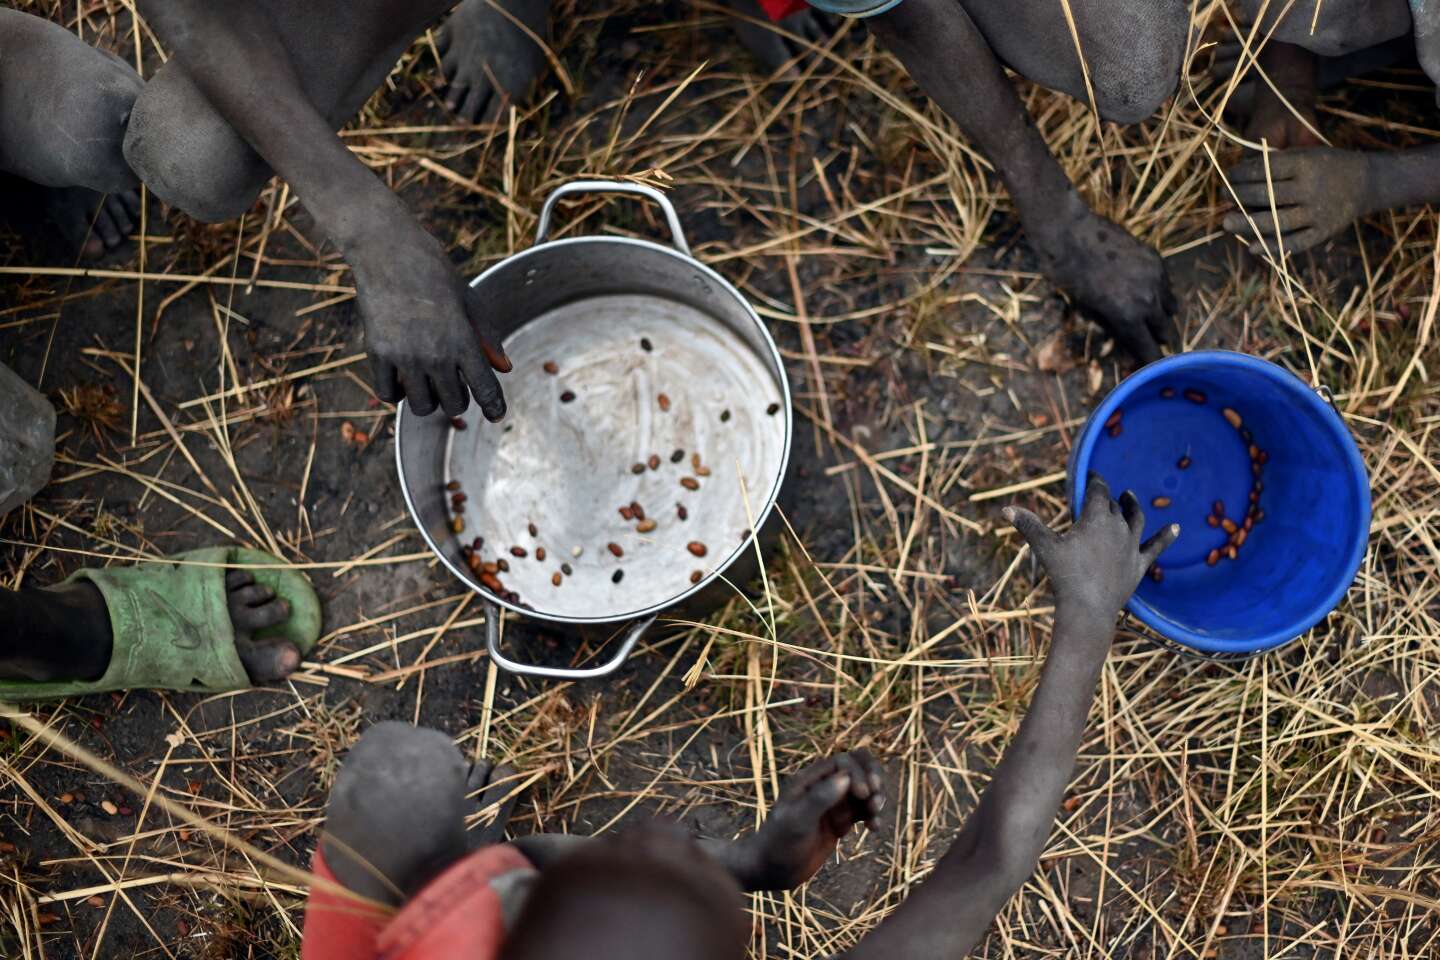 Au Soudan du Sud, 1,4 million d’enfants de moins de 5 ans souffrent de malnutrition